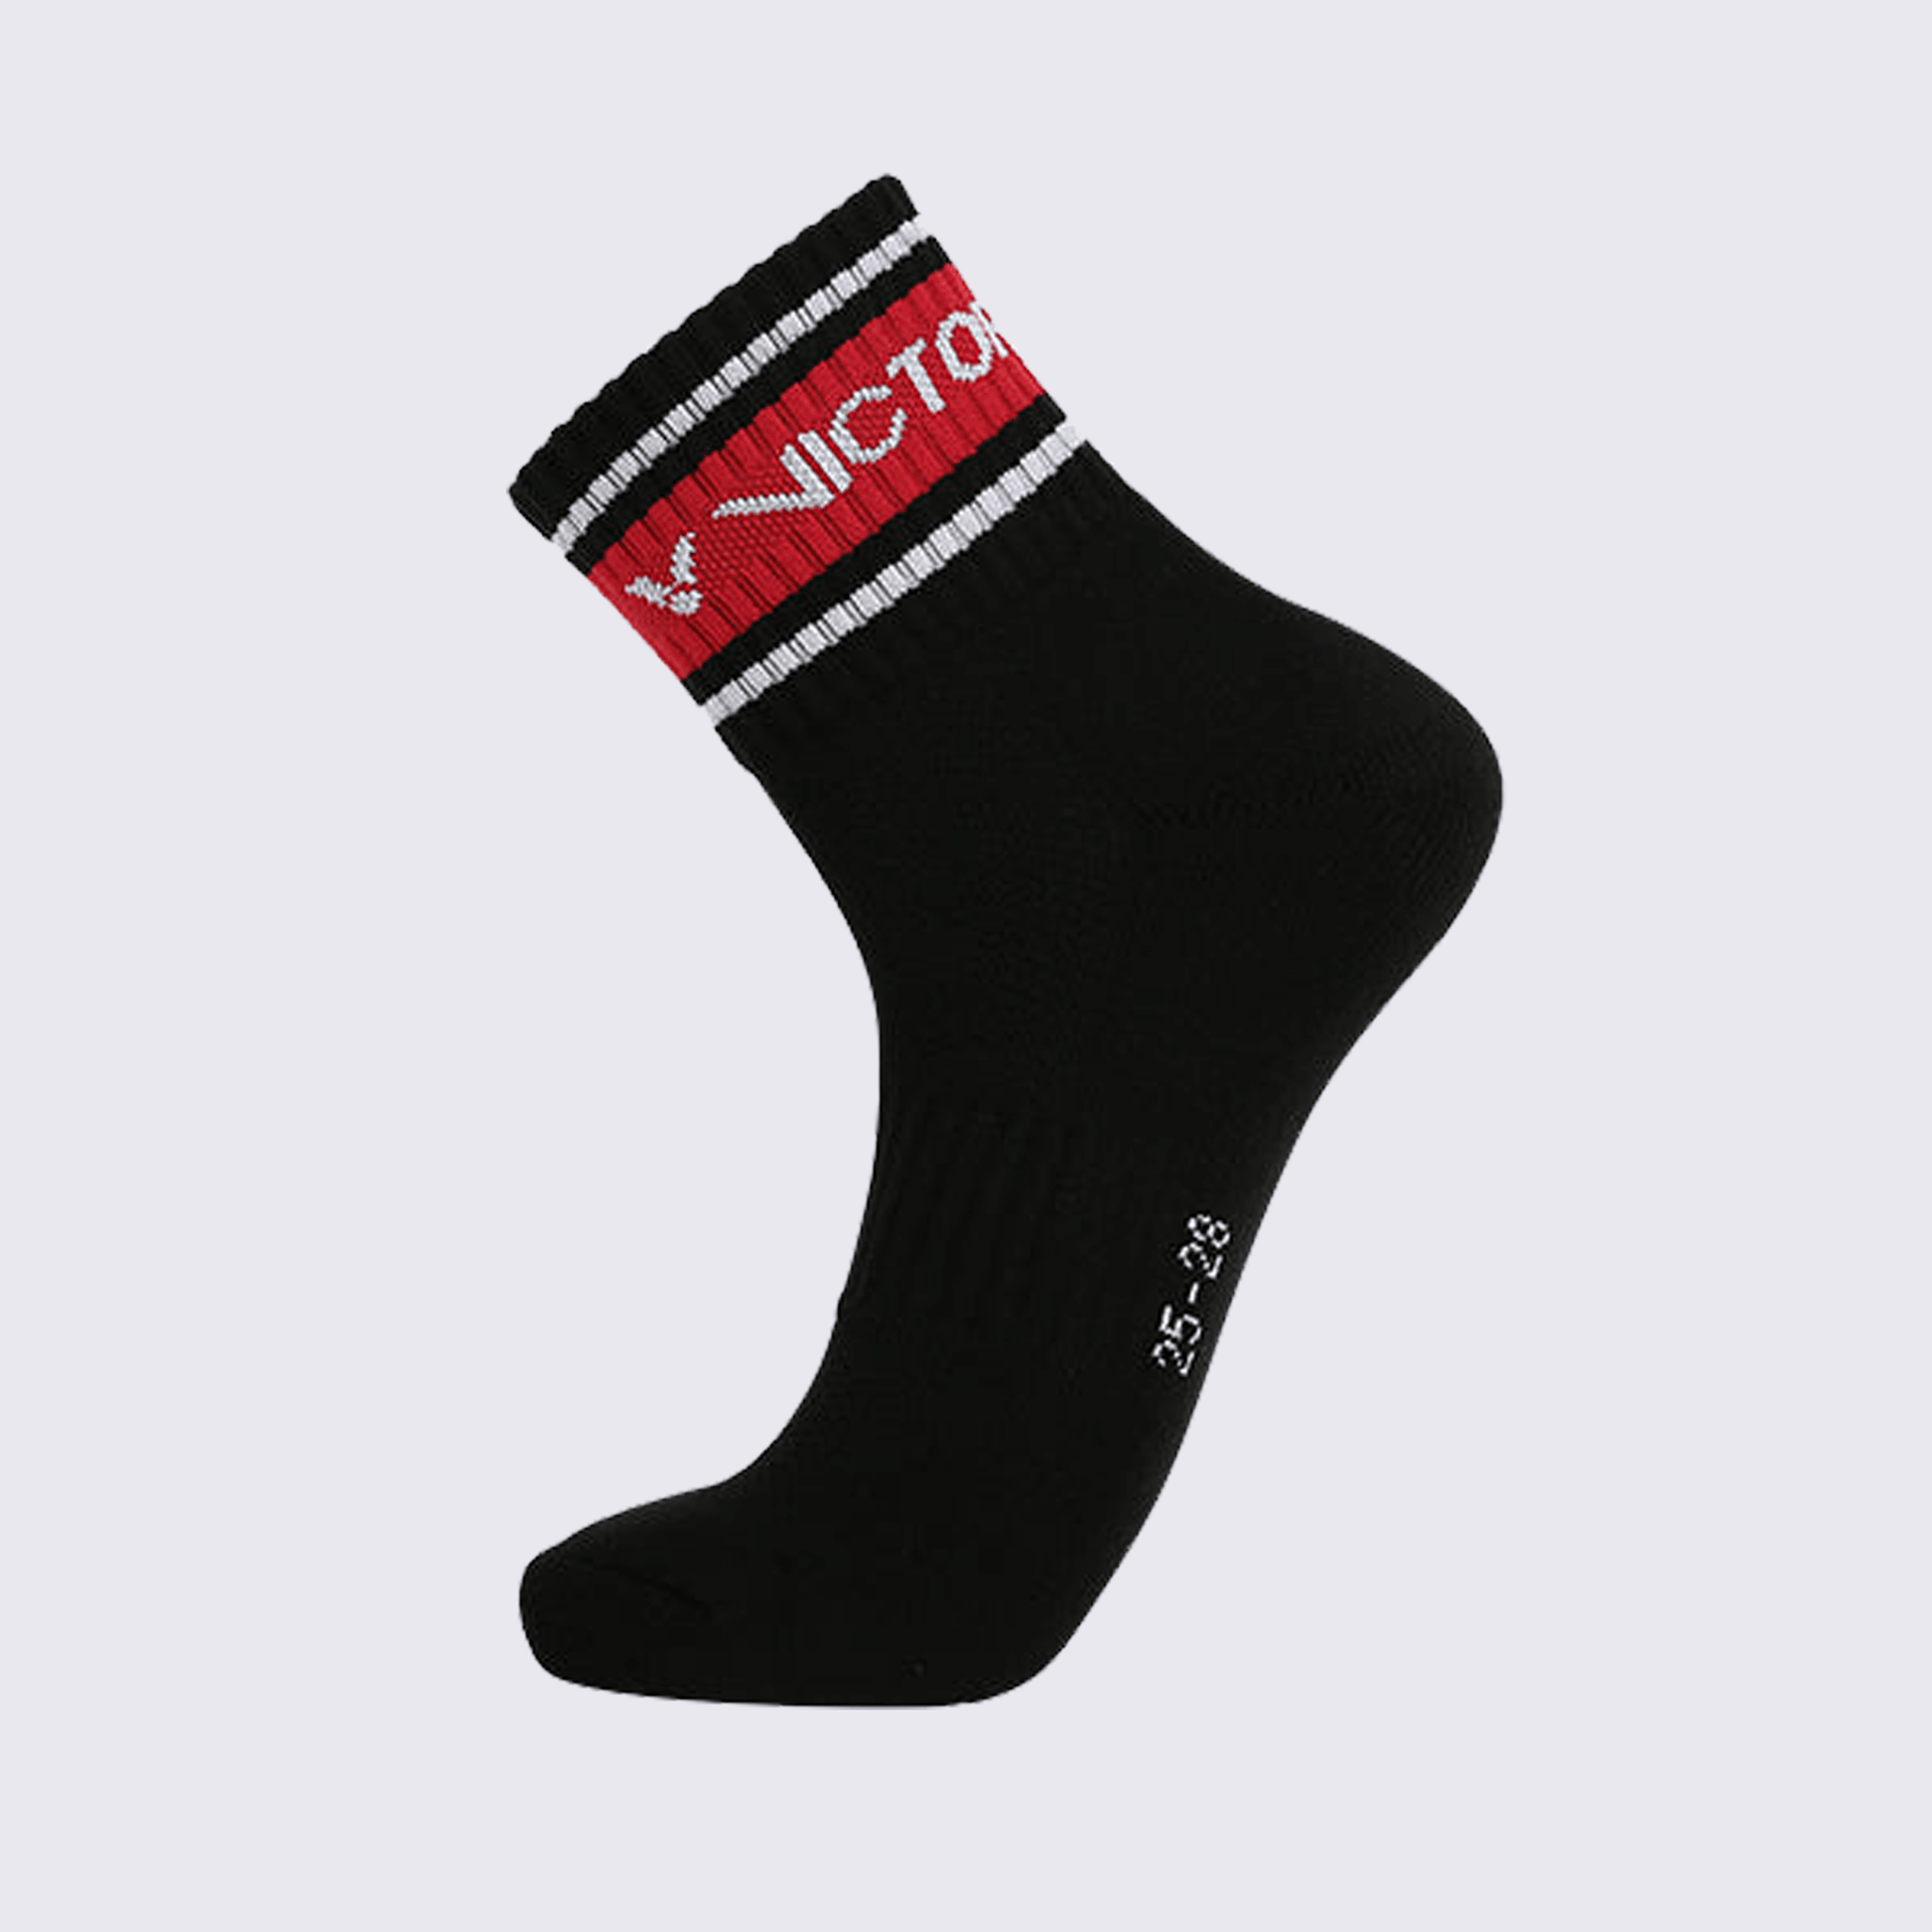 Victor Men's Sports Socks SK156C (Black)